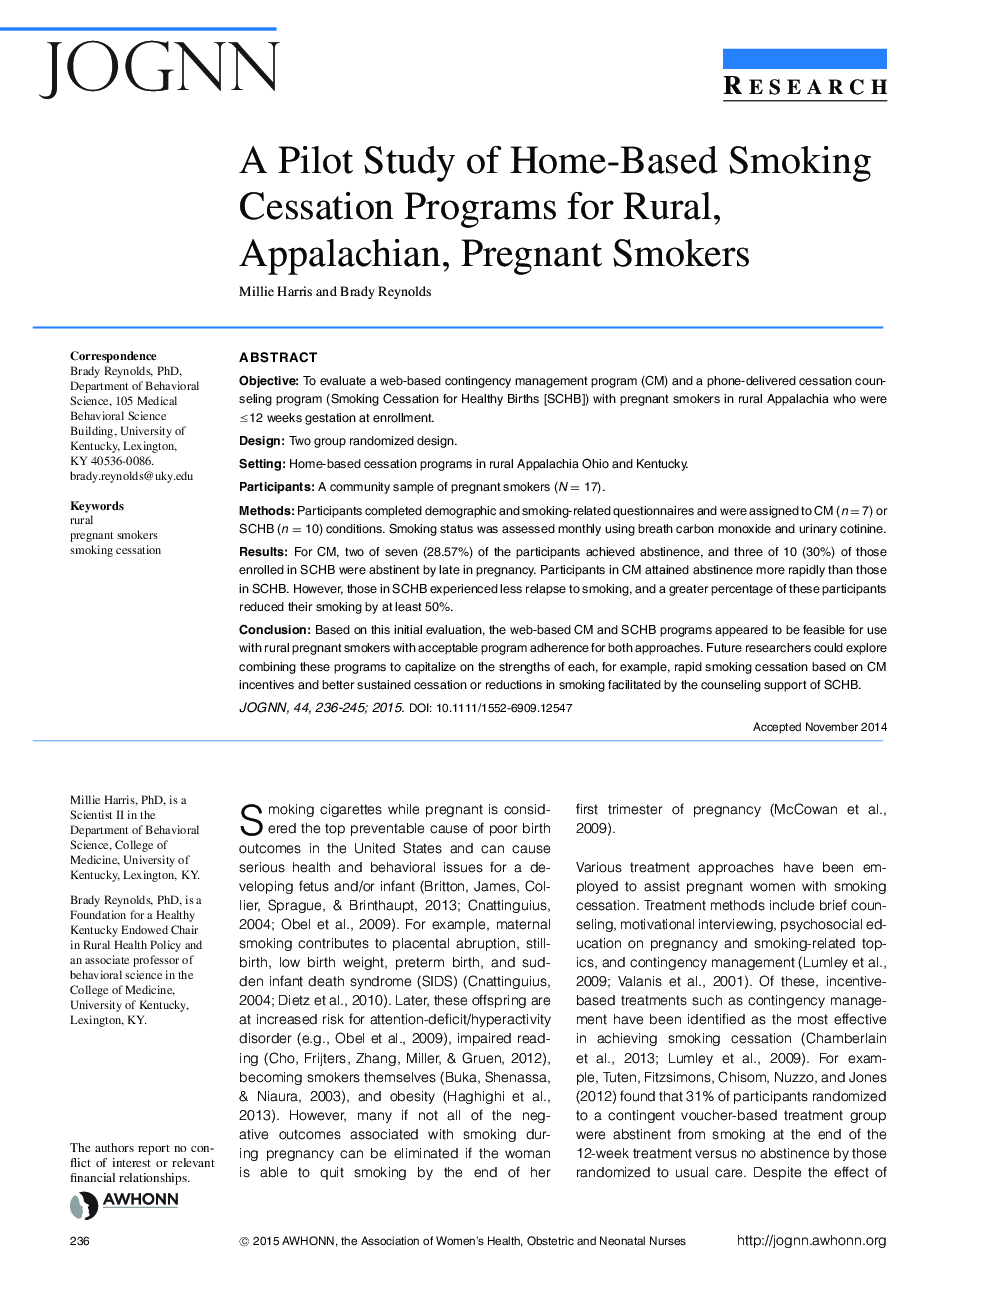 یک مطالعه آزمایشی برنامه های ترک سیگار برای مبتلایان به سیگار کشیدن روستایی، آپالاشی و باردار 